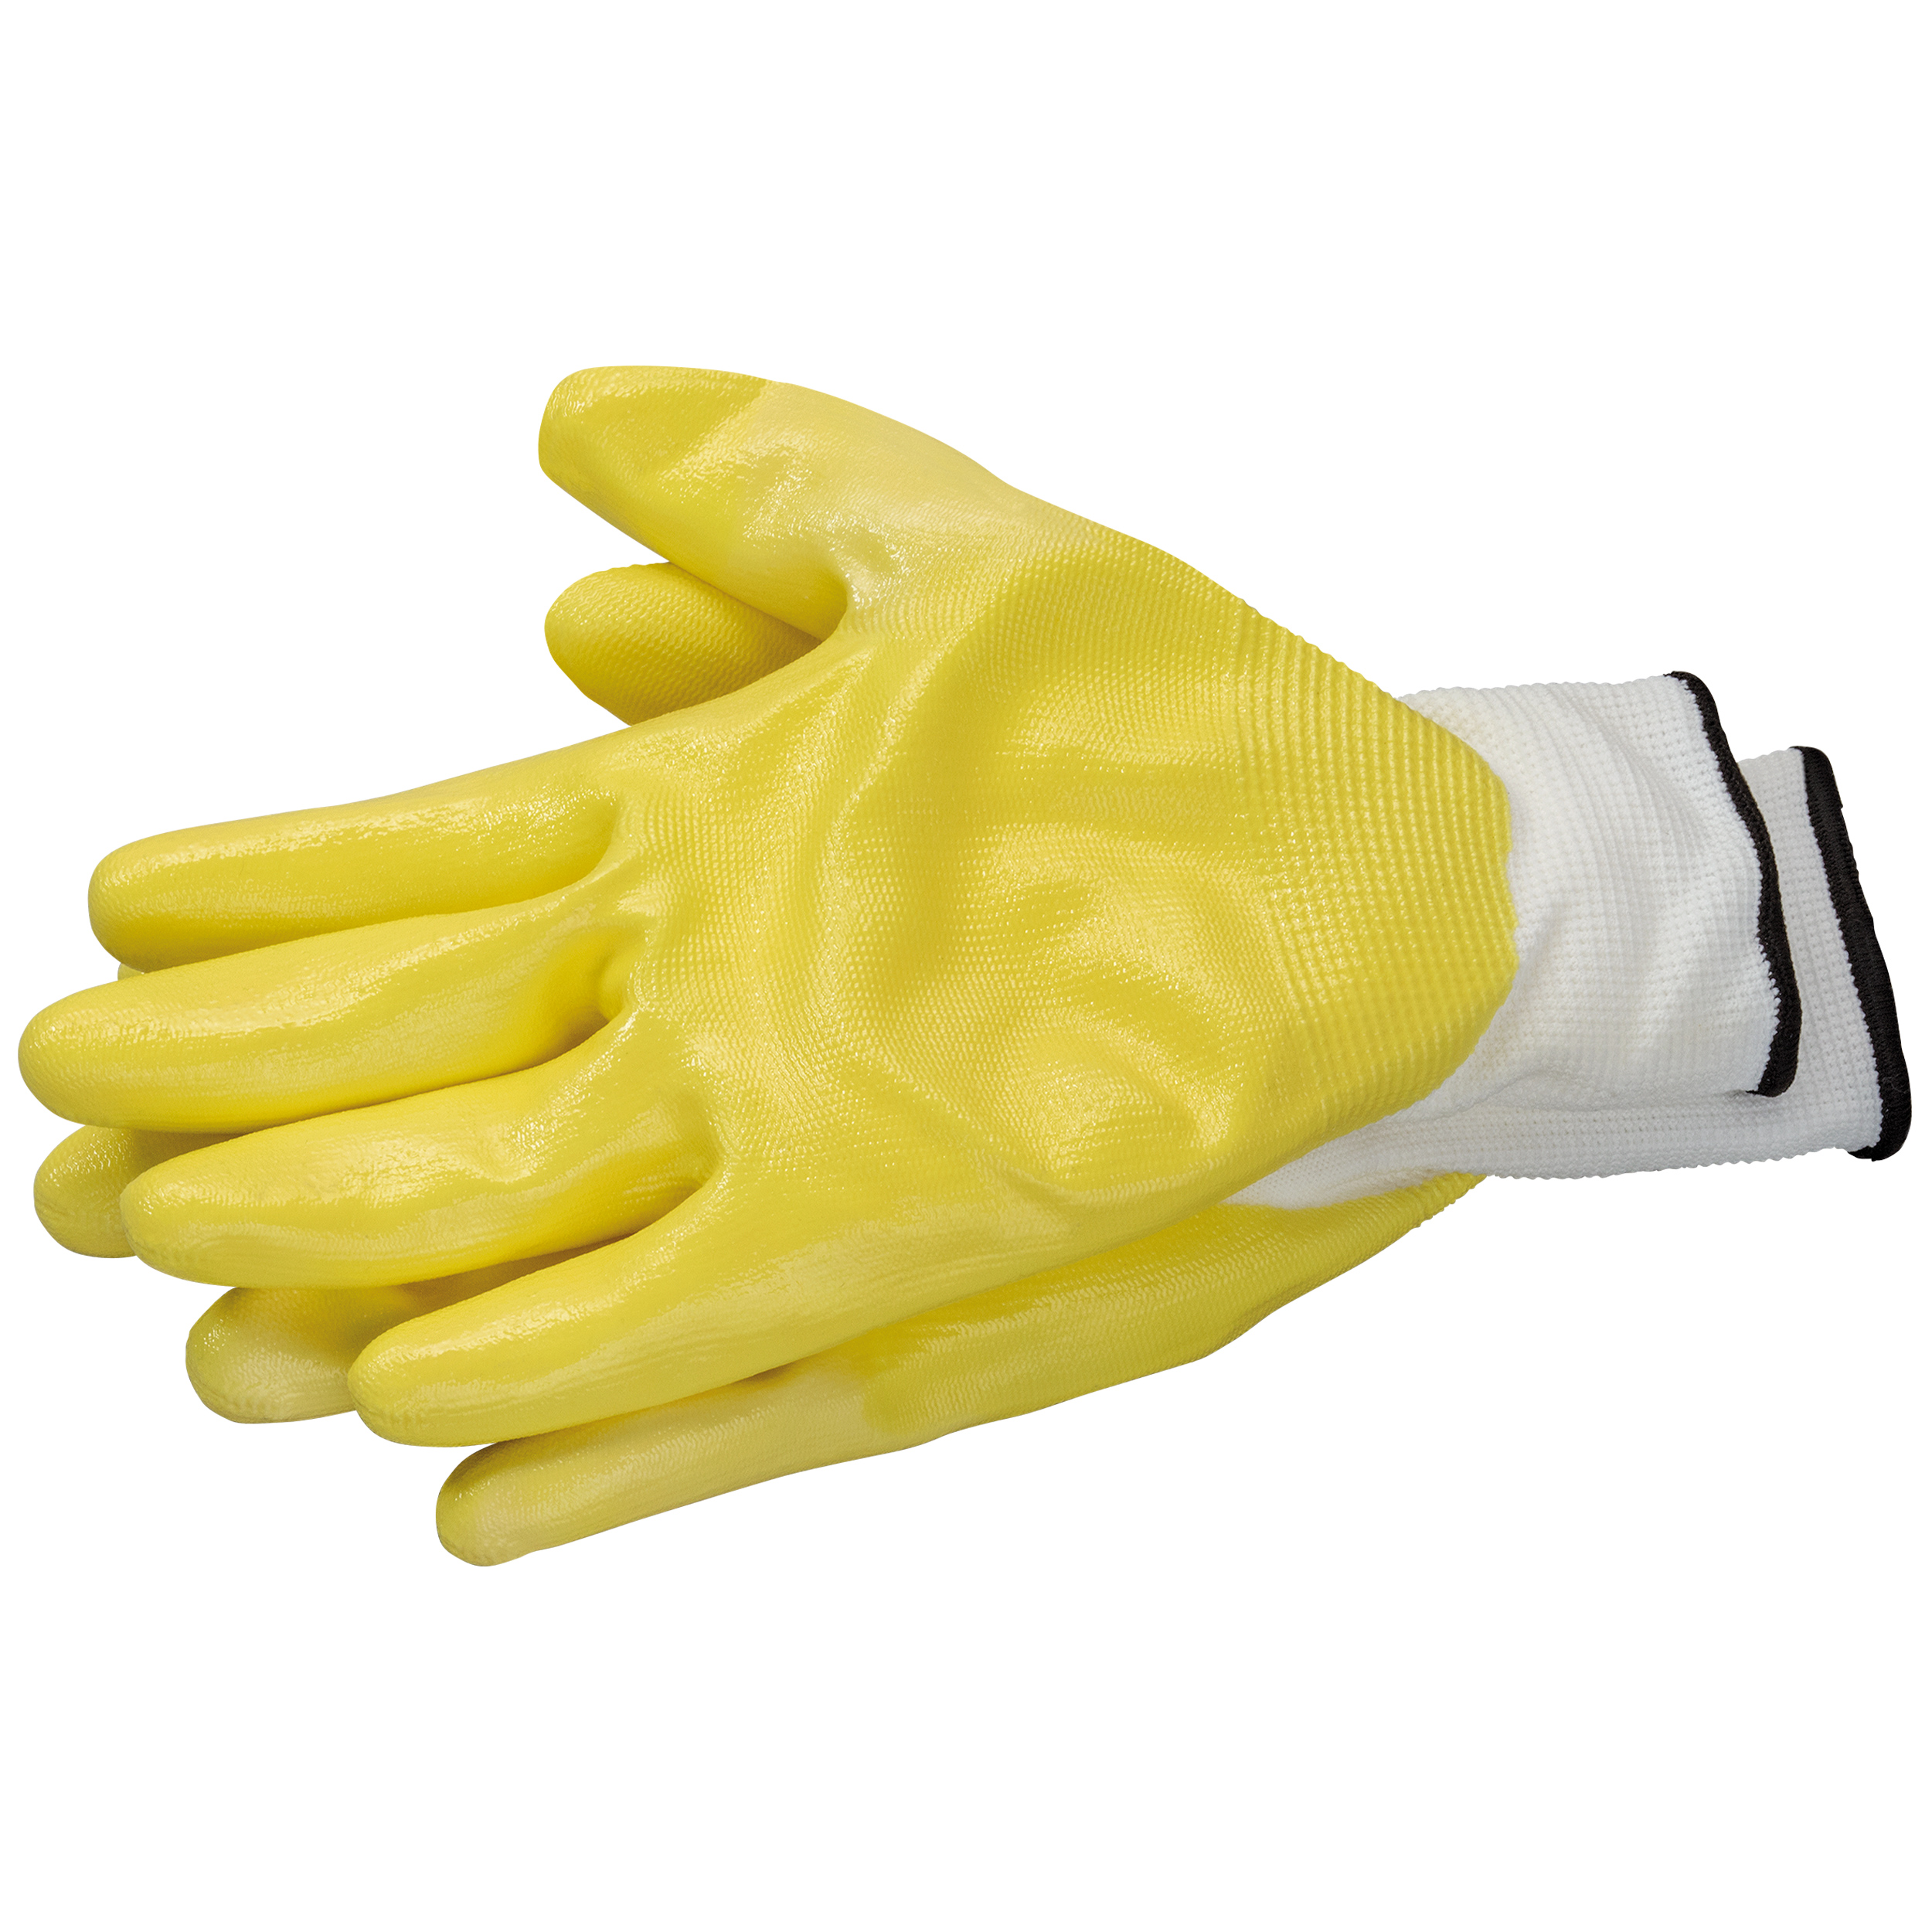 Handschuhe ProtectGrip Latex gelb EN420 Größe 10 (XL)